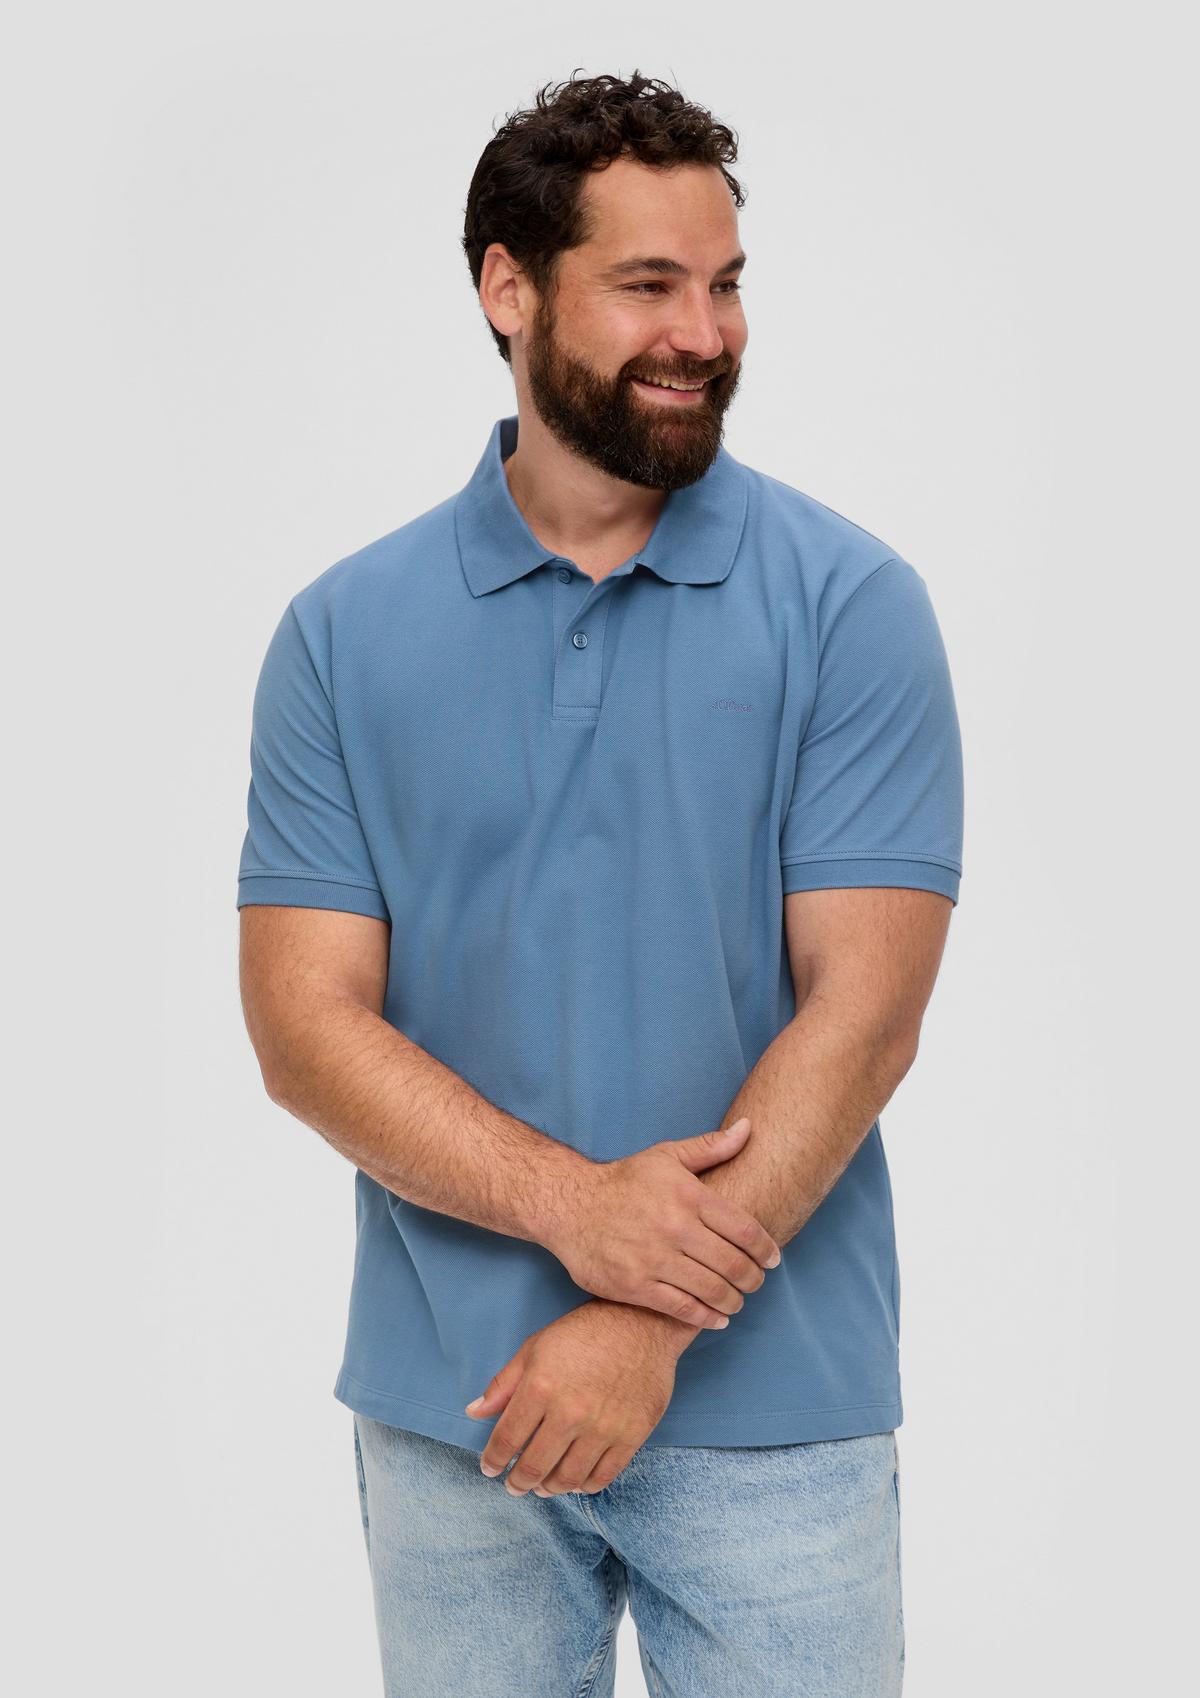 Polo Shirts for Men | Poloshirts